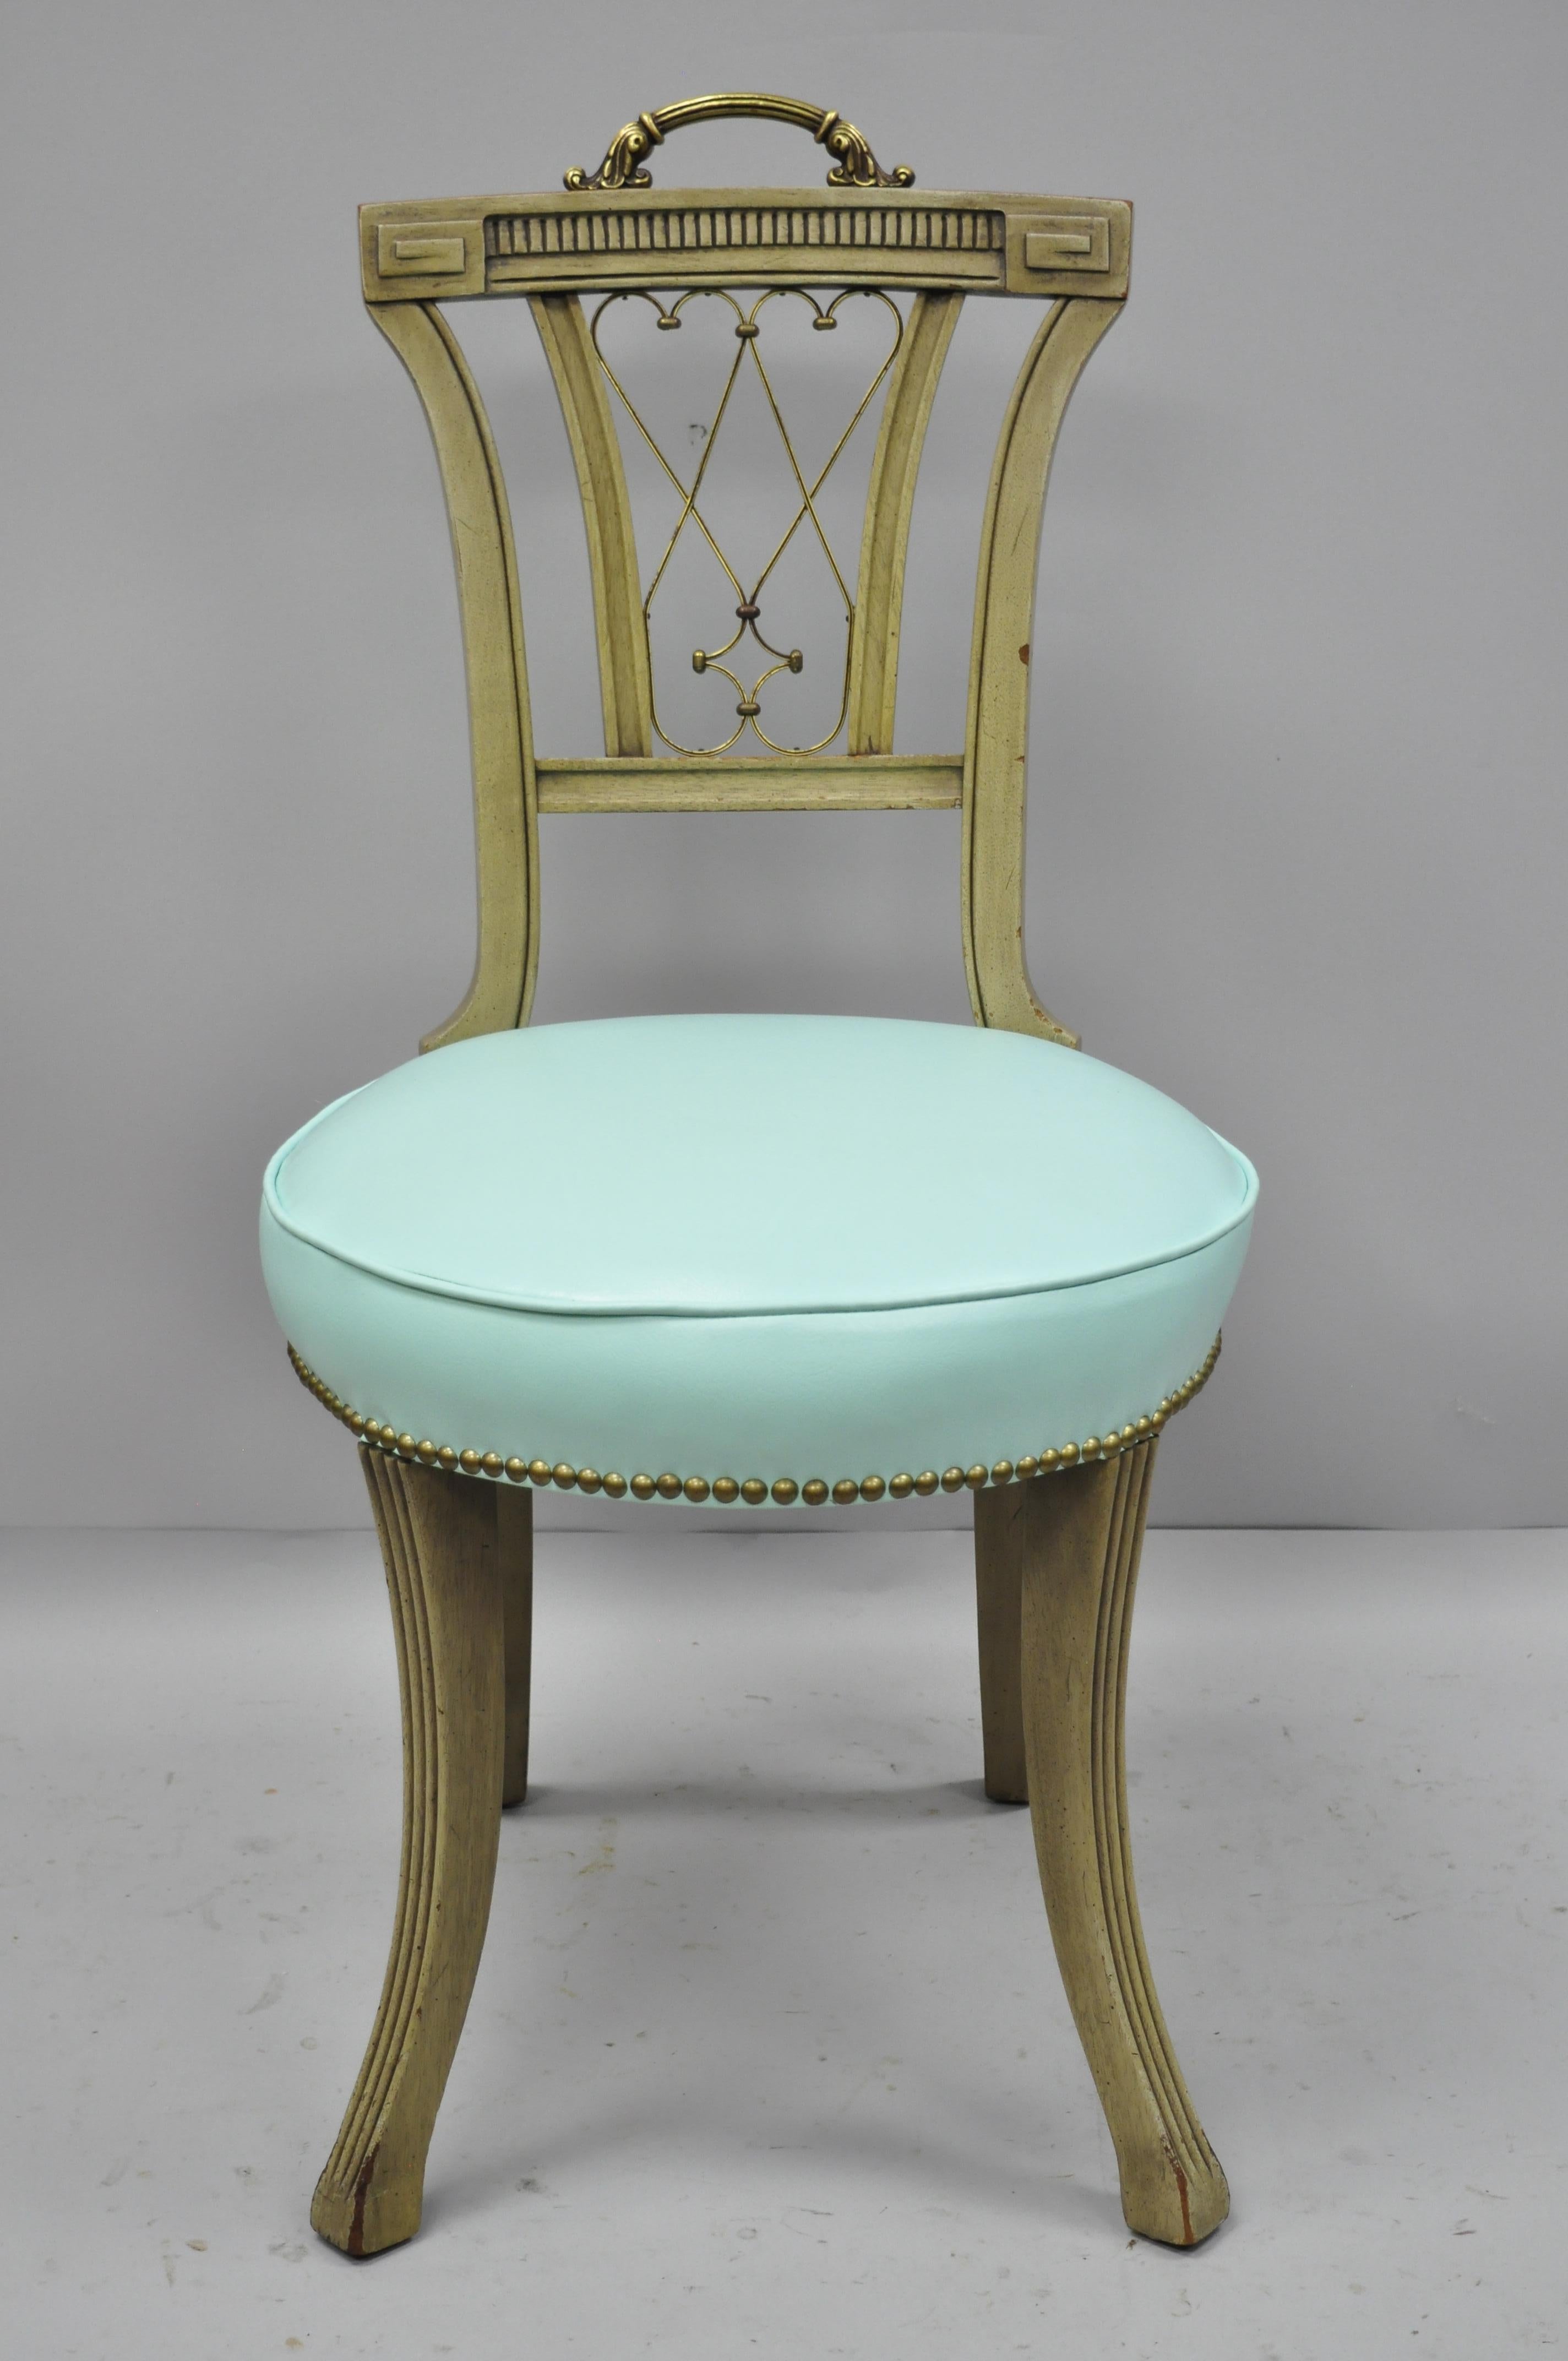 Paar geschnitzte Stühle aus Mahagoni im französischen Regency-Stil mit Messinggriff und aquamarinfarbenem Vinyl. Verschnörkelter Messinggriff, messingverzierte 